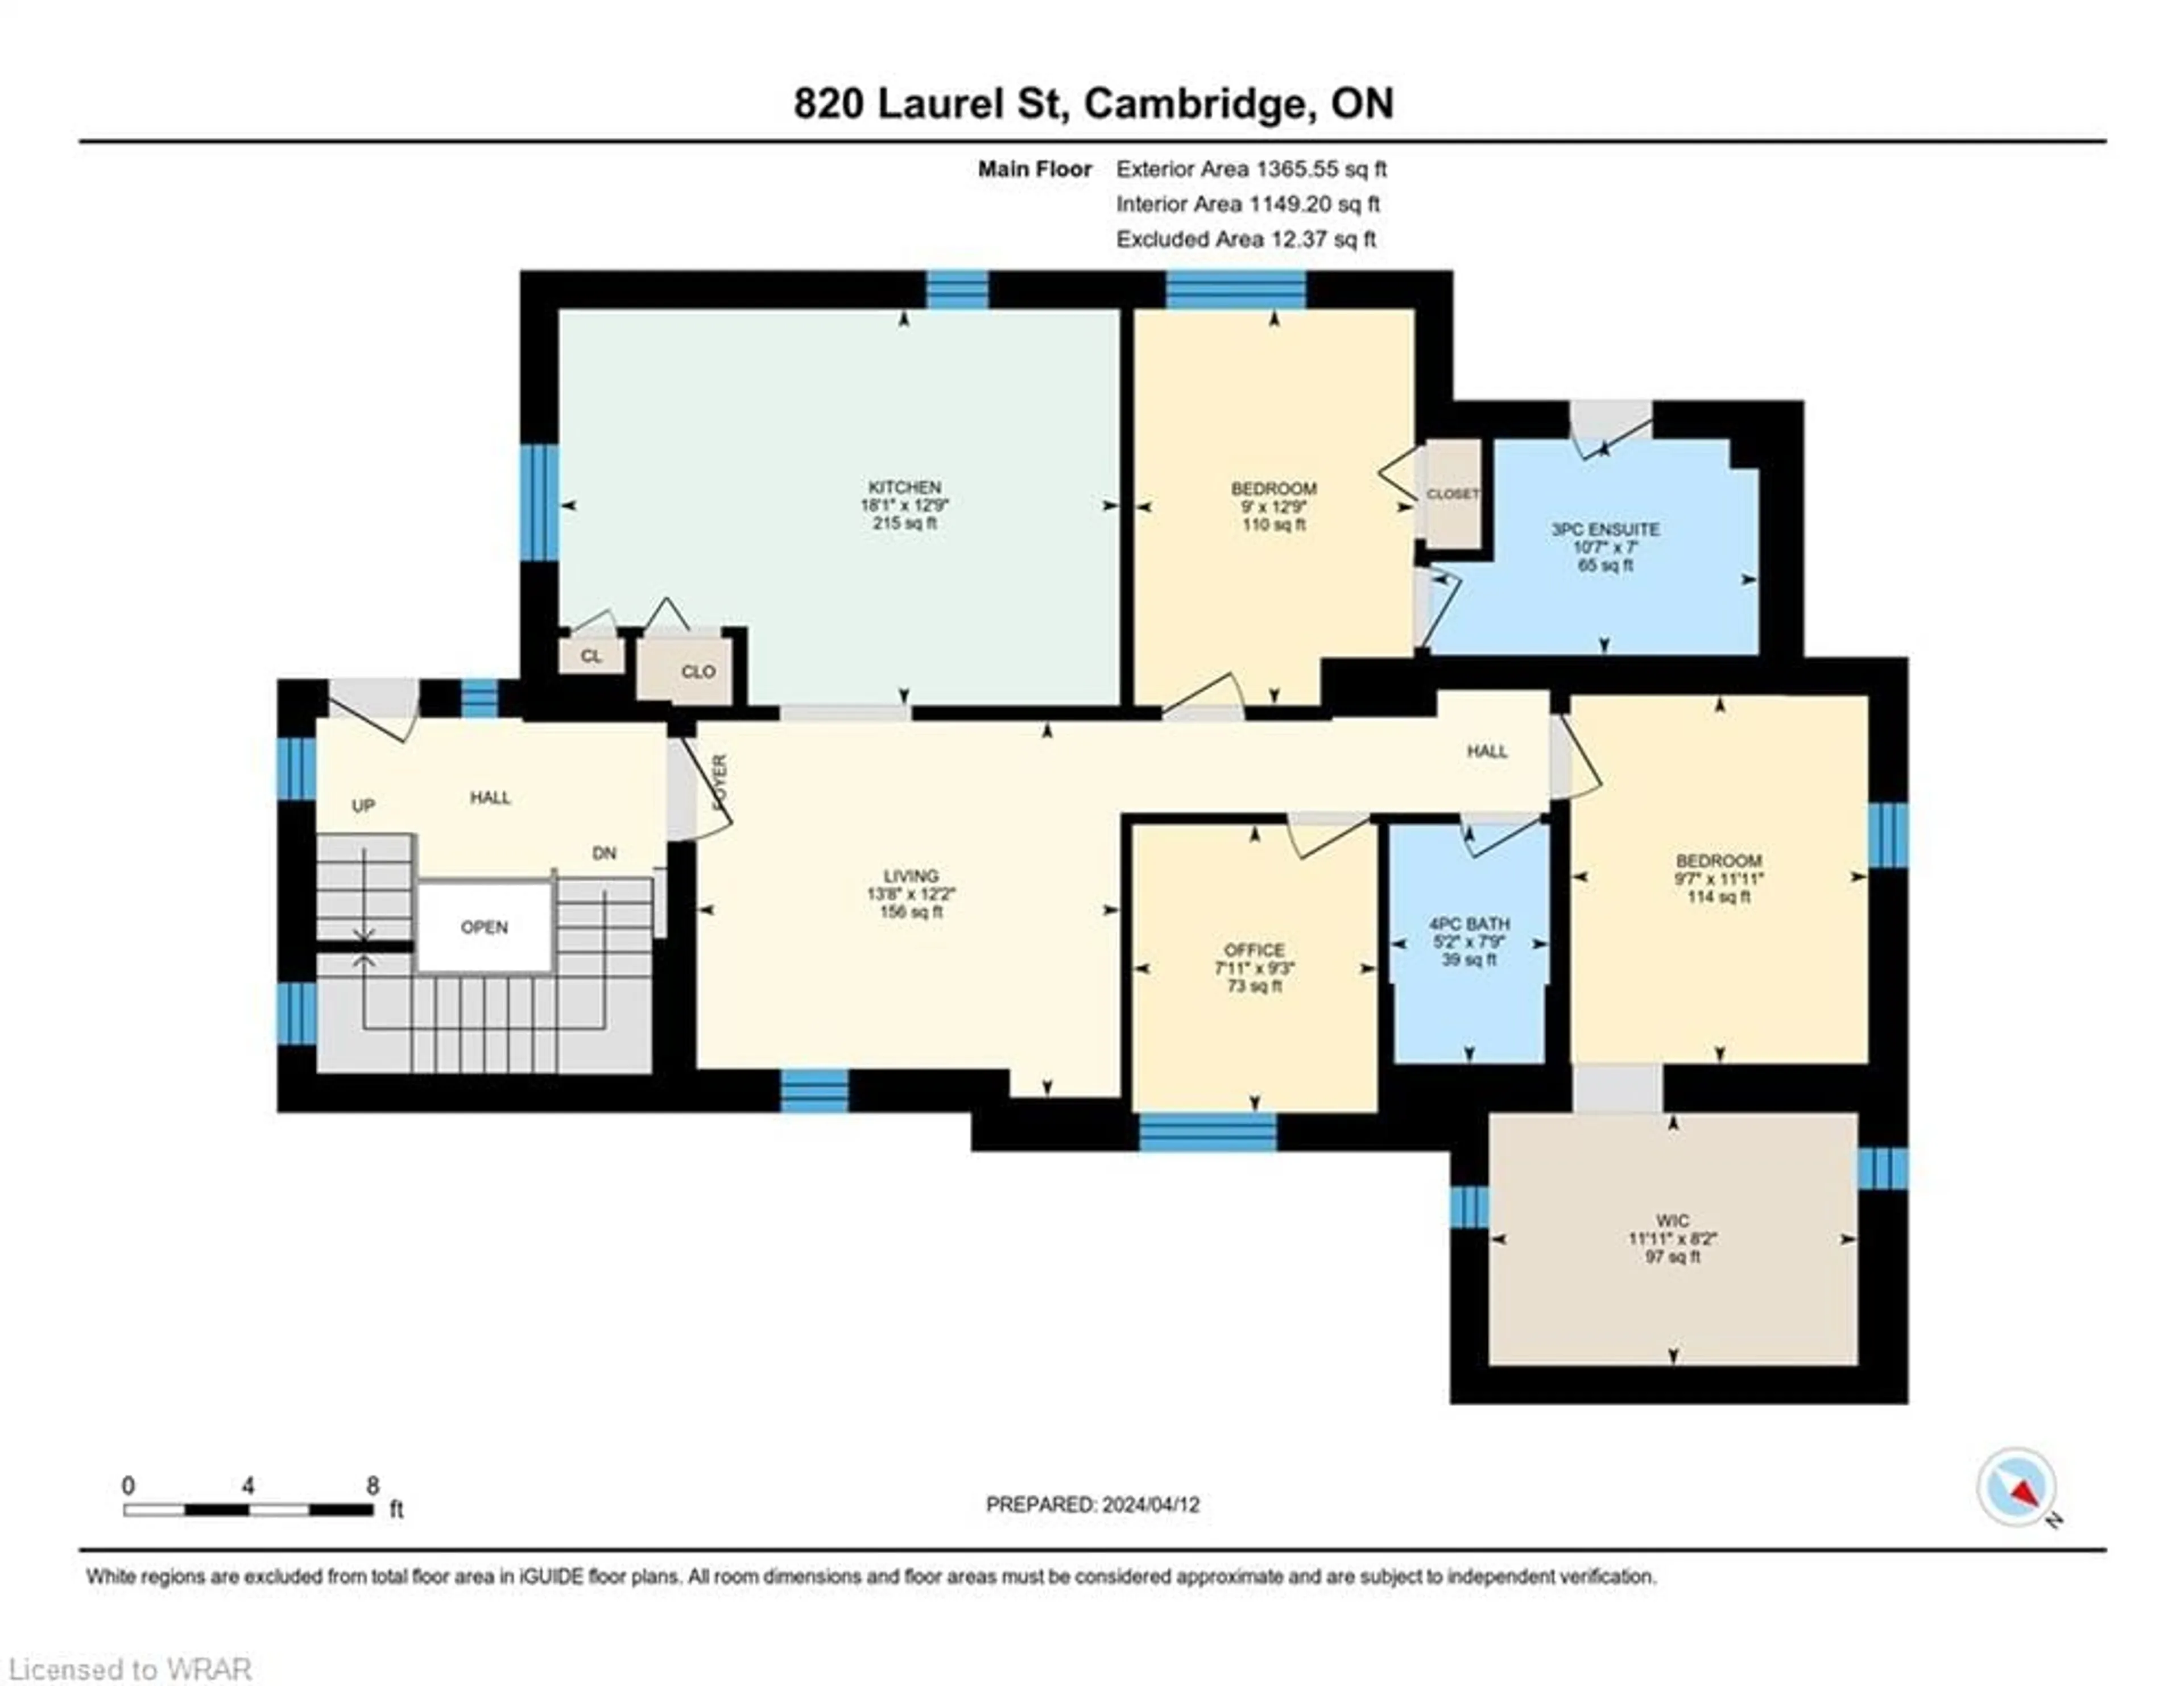 Floor plan for 820 Laurel St, Cambridge Ontario N3H 3Z5